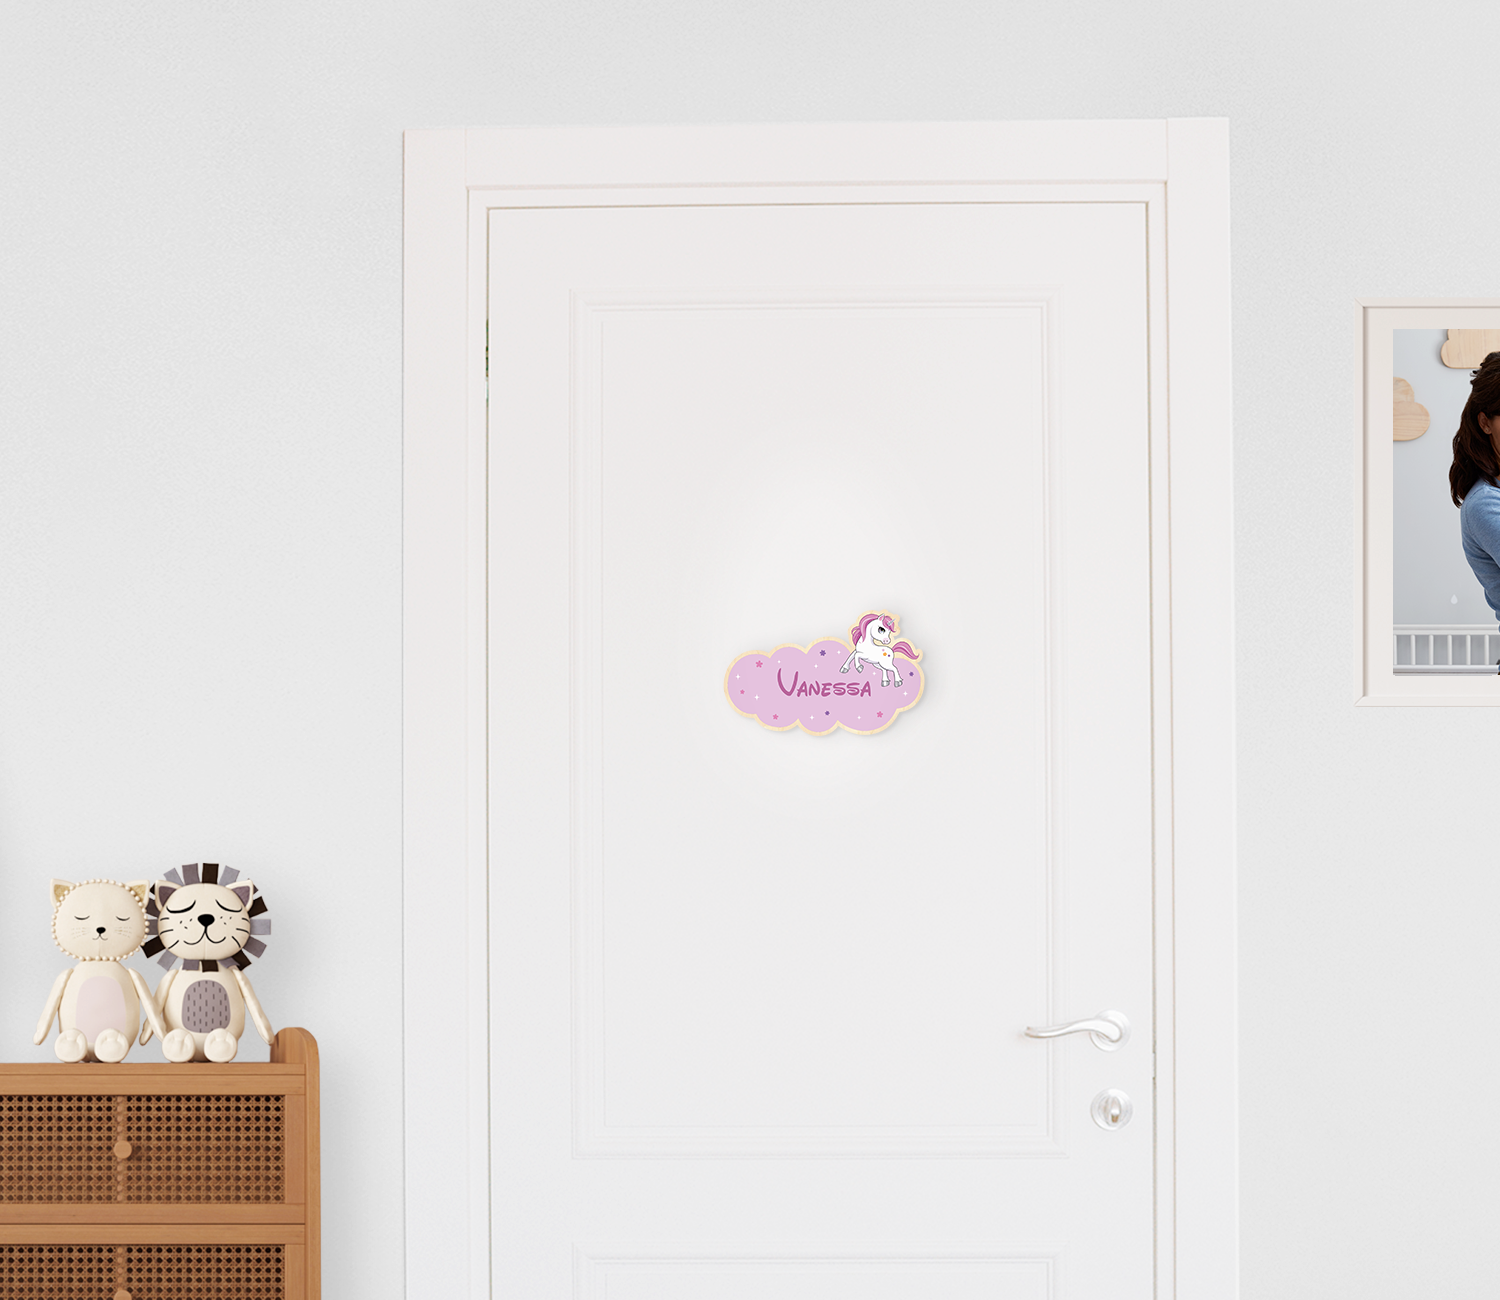 Türschild aus Holz bedruckt mit einer Wolke, Sternen, einem Einhrorn und personalisiertem Namen, montiert an einer Kinderzimmertür.